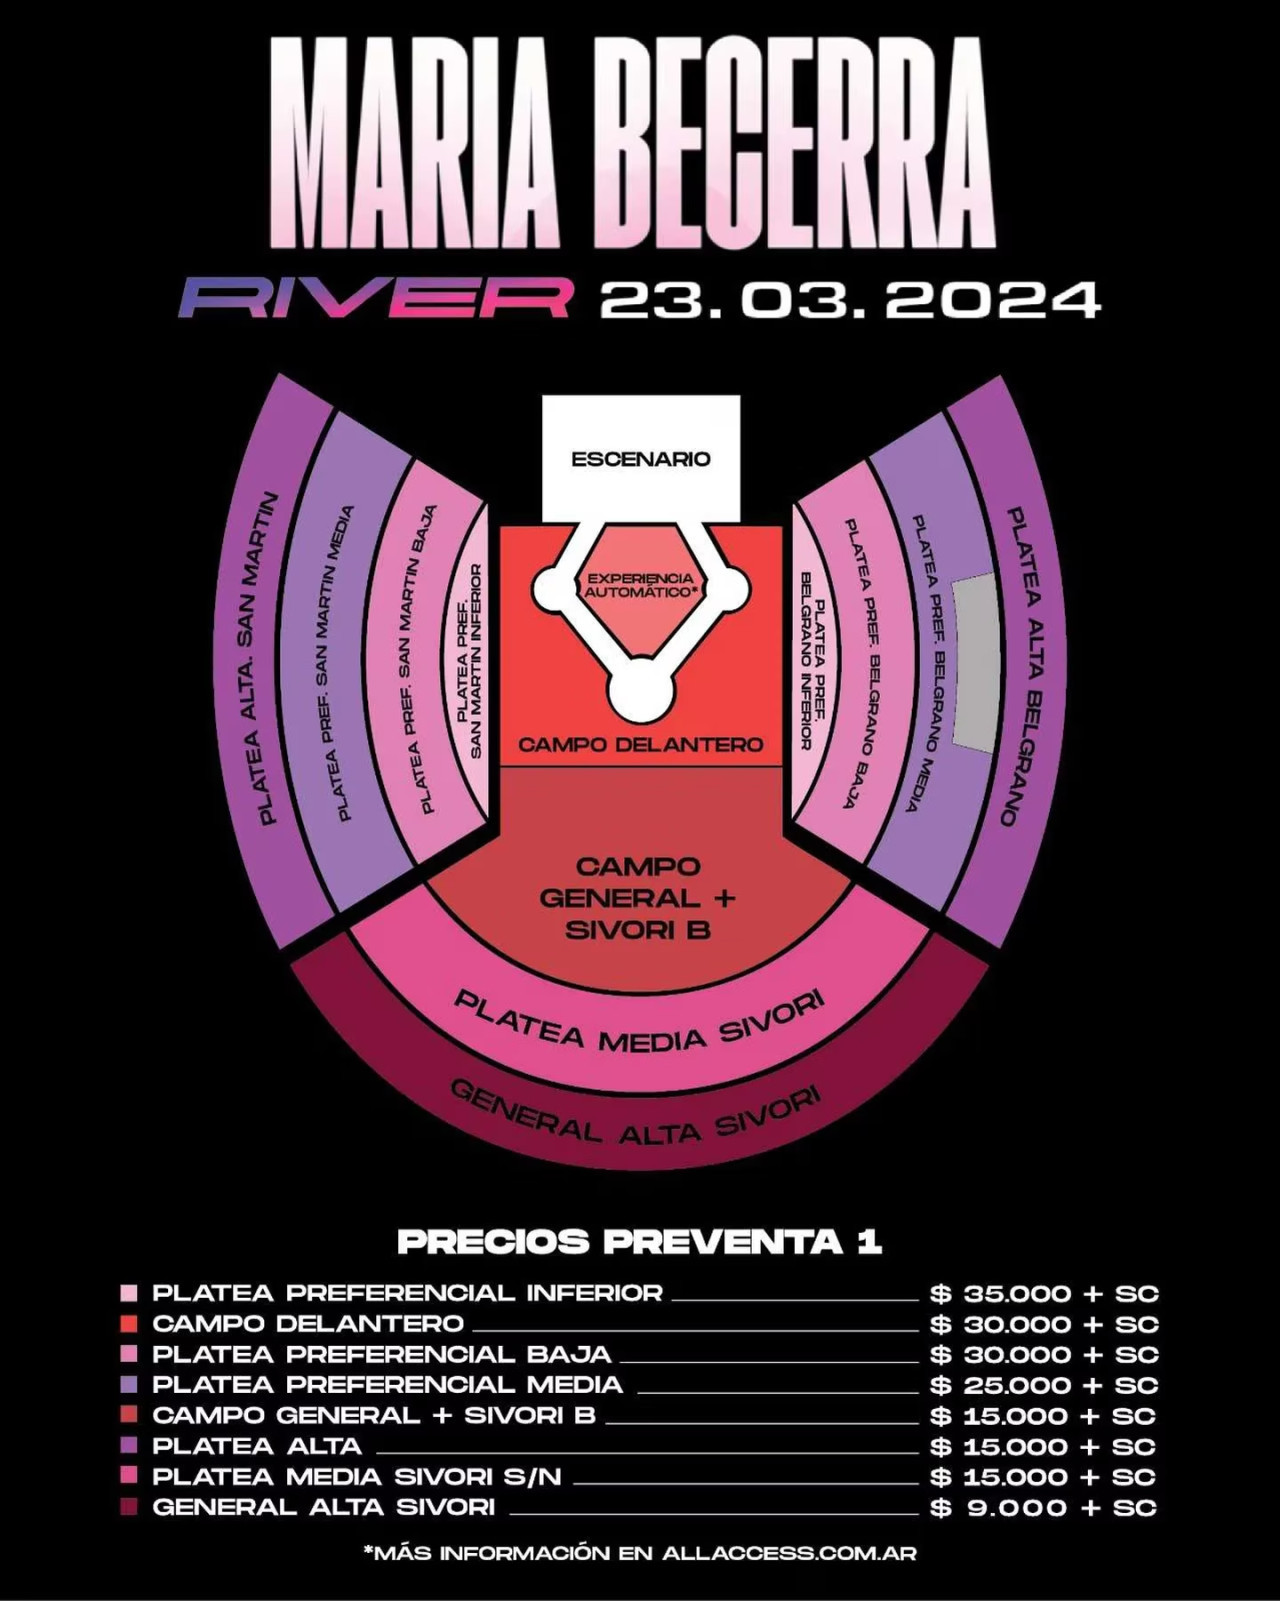 Información sobre el show de Maria Becerra en River. Foto: redes.